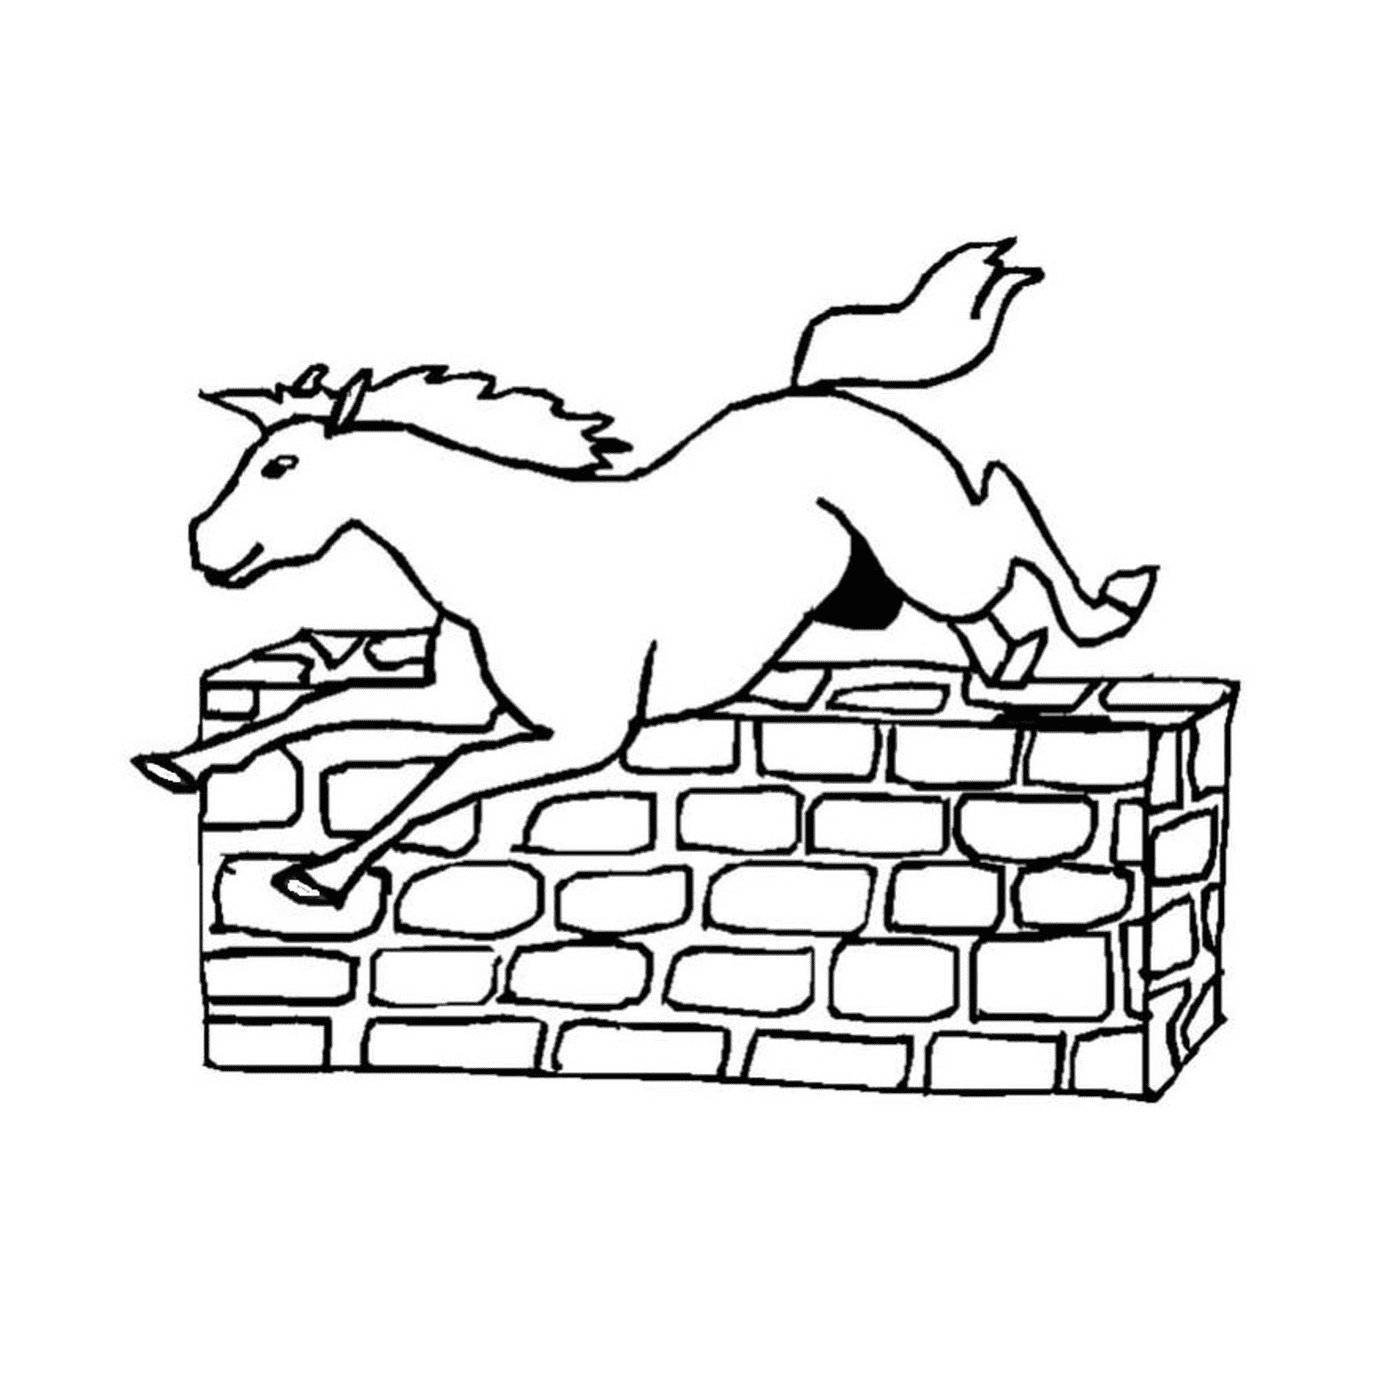   Cheval bondissant audacieusement par-dessus un mur 